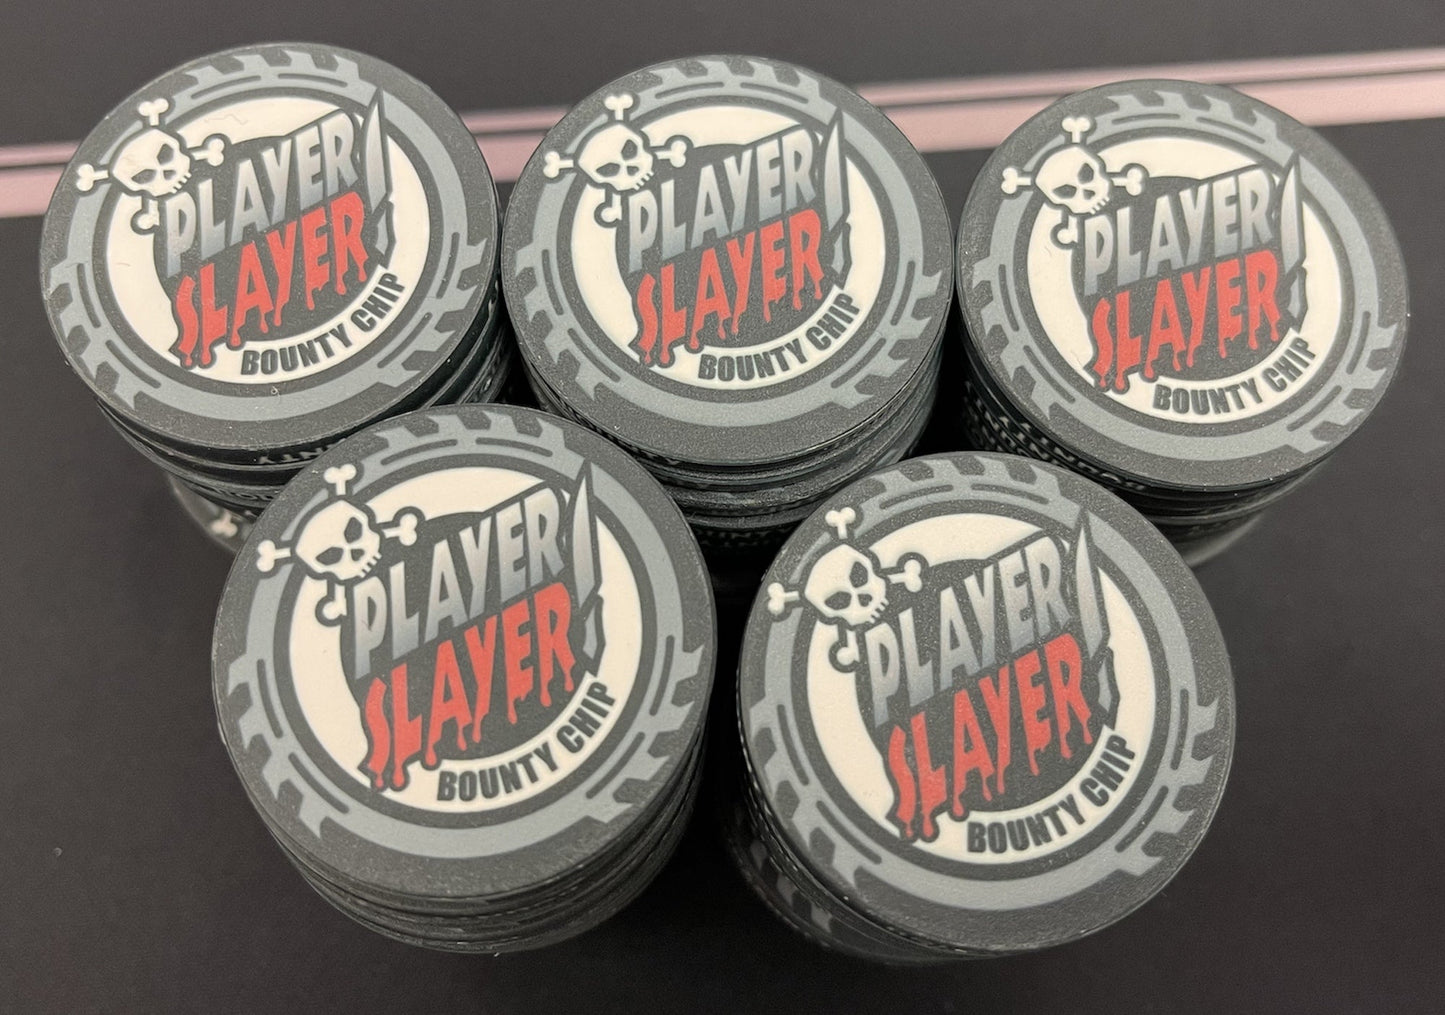 Player Slayer Bounty Chips [43mm]